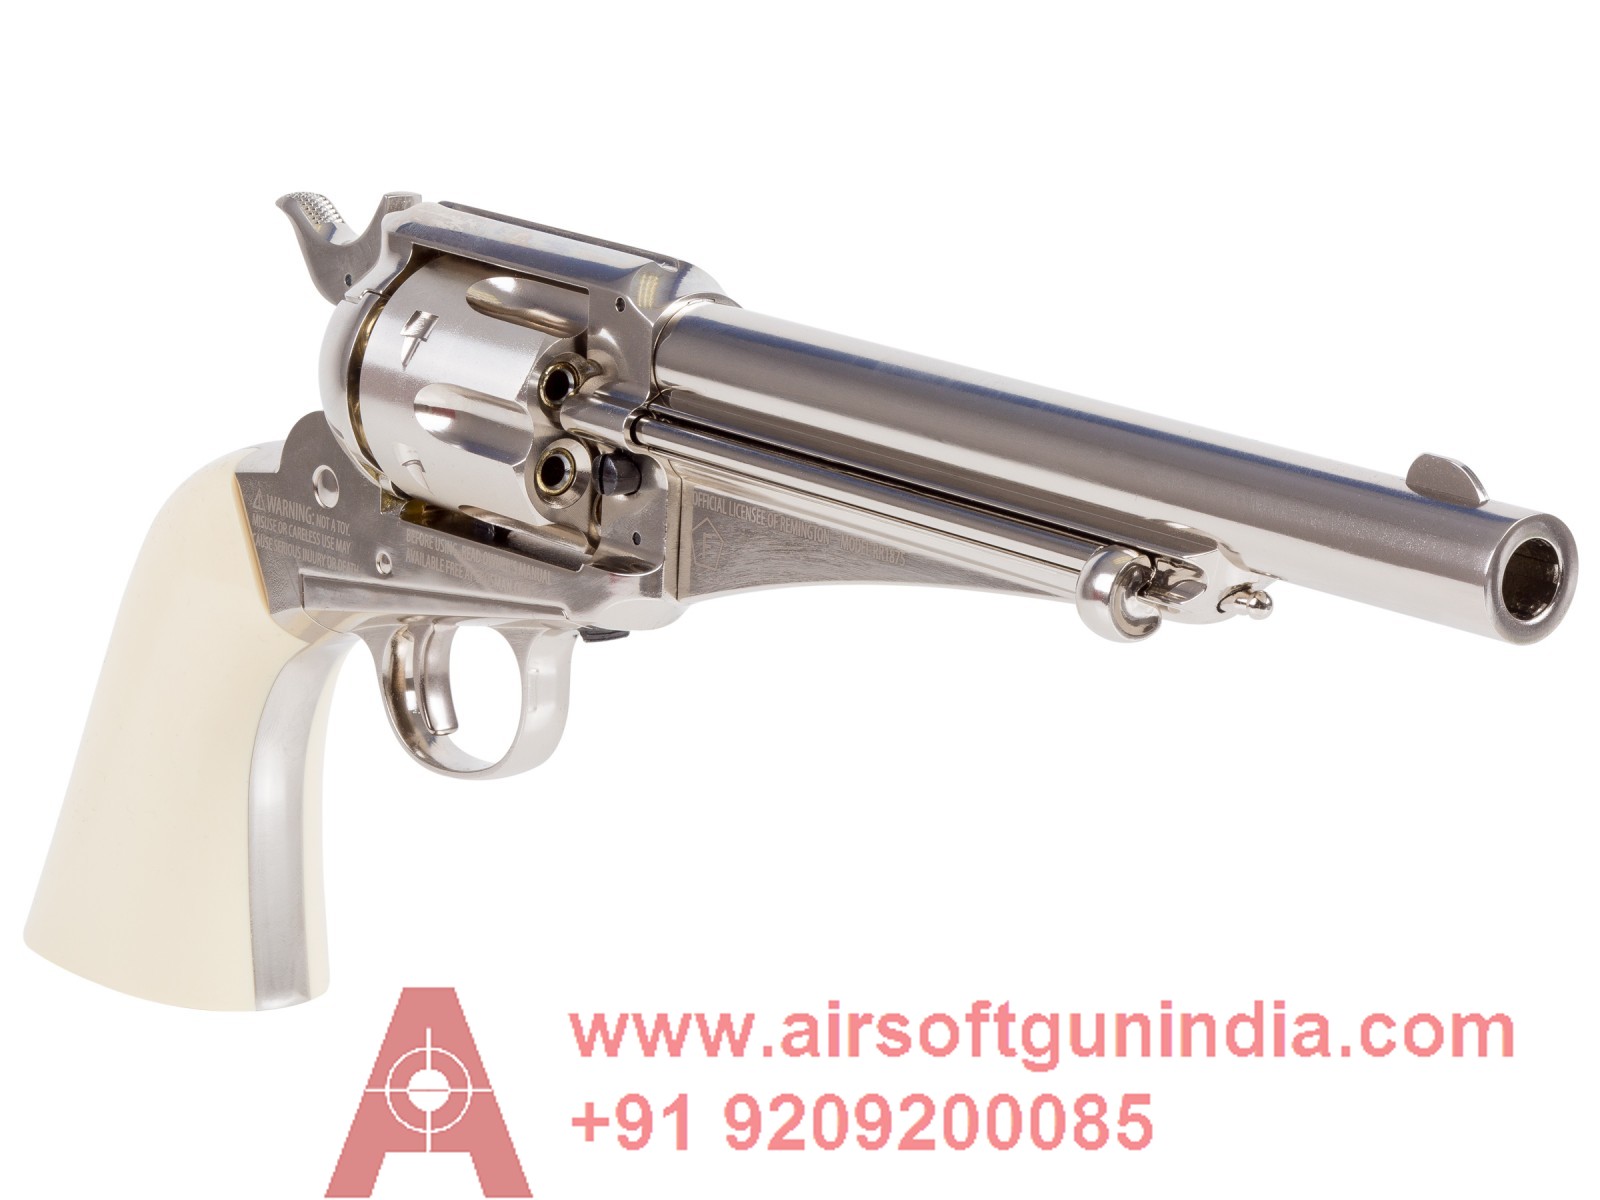 REMINGTON 1875 CO2 DUAL AMMO REVOLVER - Air Guns India